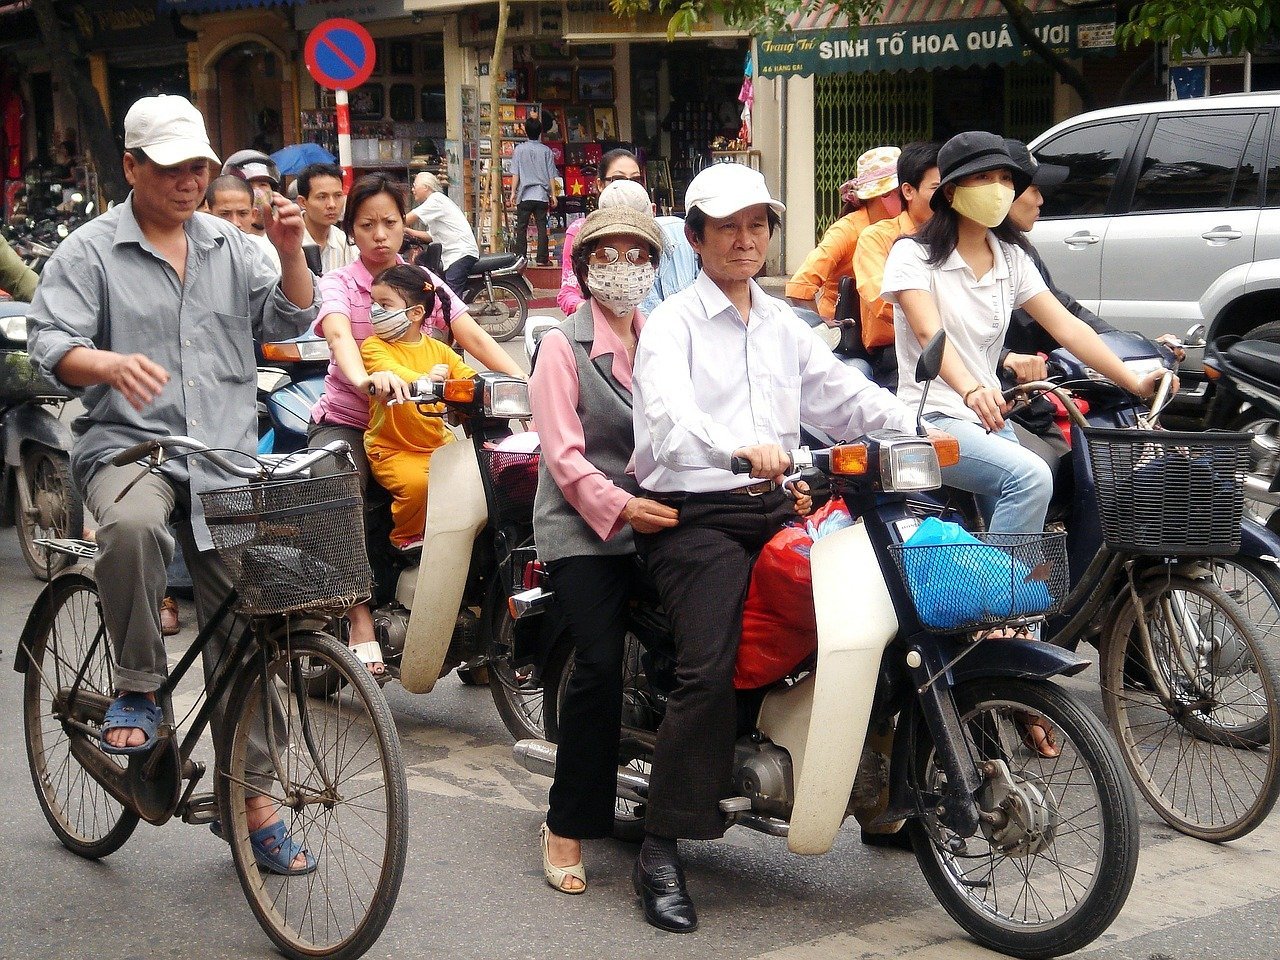 Ciclistas em área urbana do Vietnã.